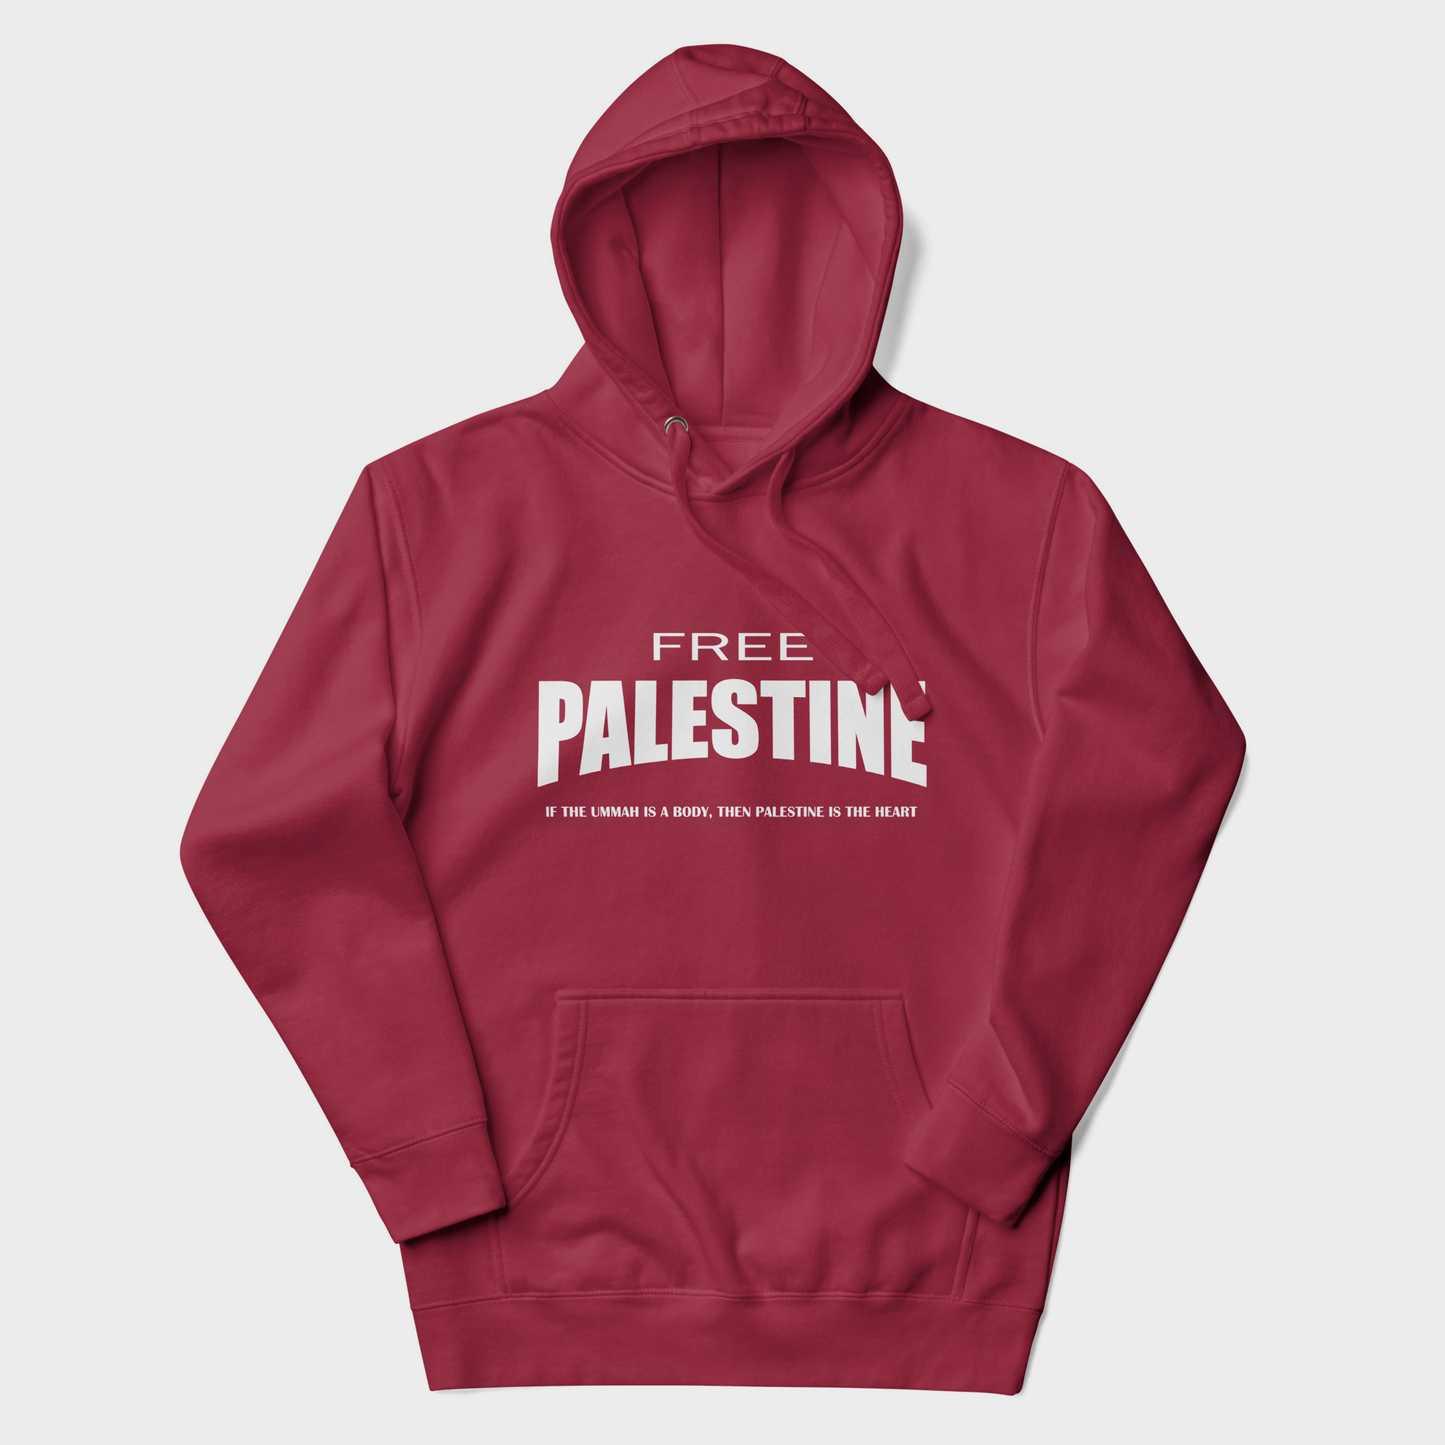 Free Palestine hoodie - Garnet